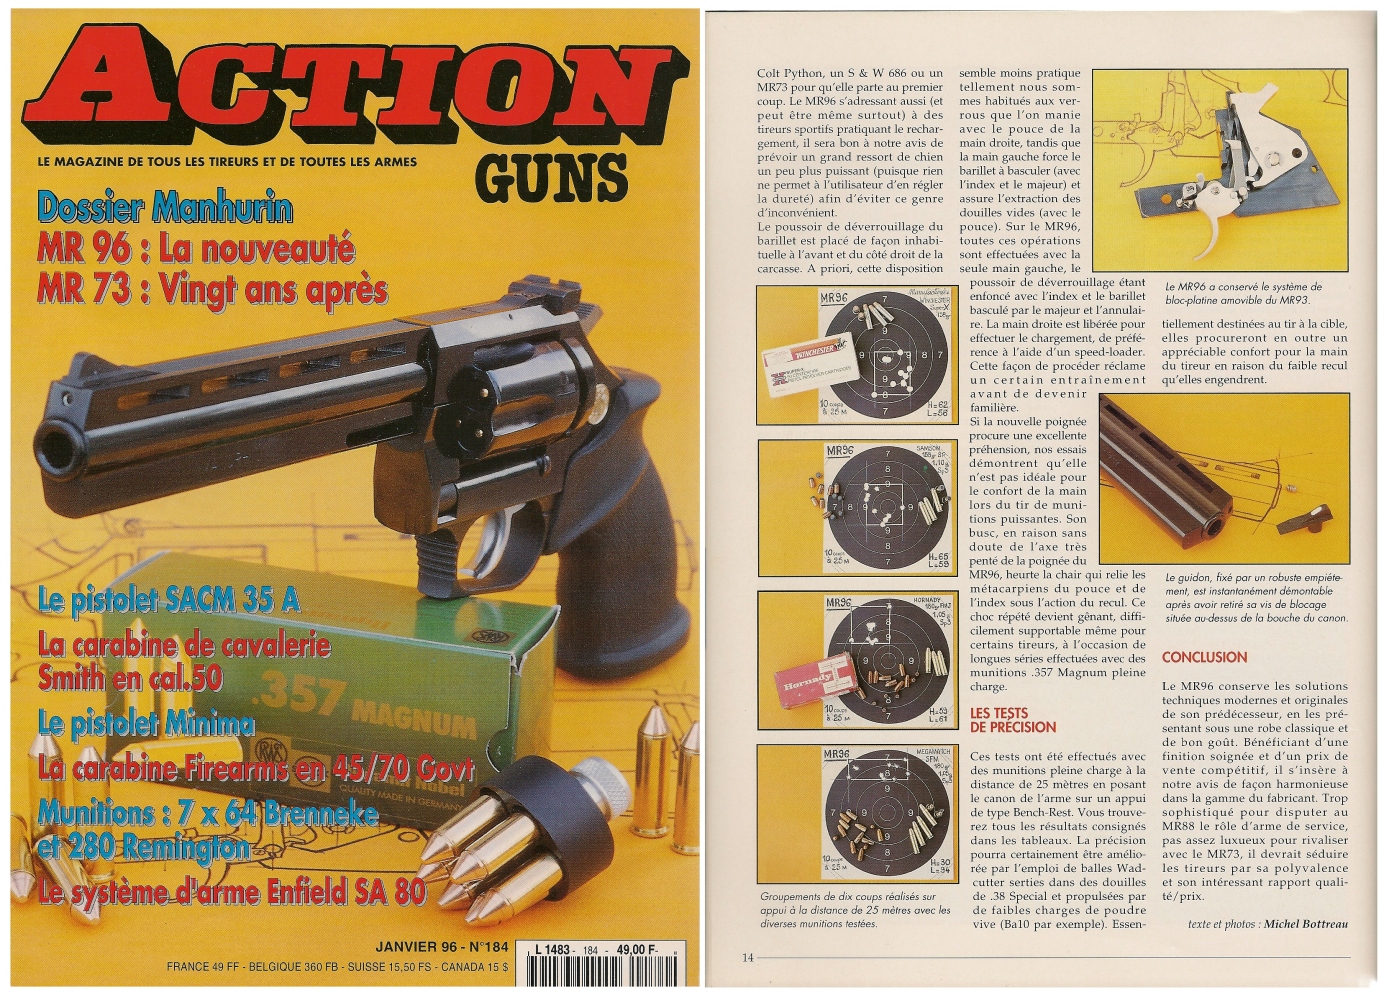 Le banc d’essai du revolver Manurhin modèle MR 96 a été publié sur 7 pages dans le magazine Action Guns n° 184 (janvier 1996).